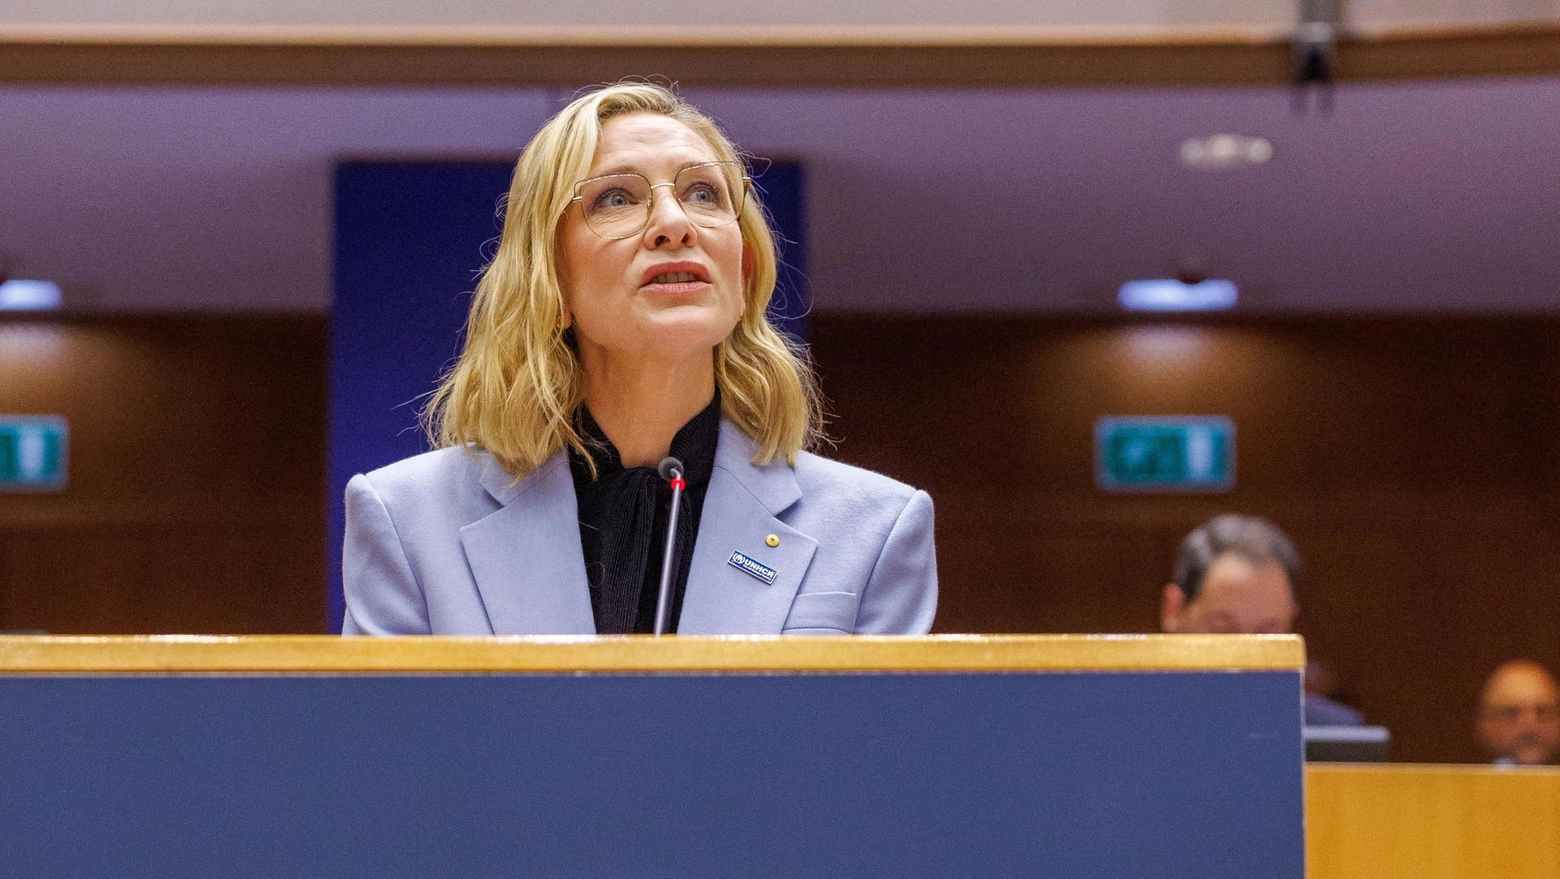 L'attrice Kate Blanchett durante il suo intervento al Parlamento europeo (Ansa)